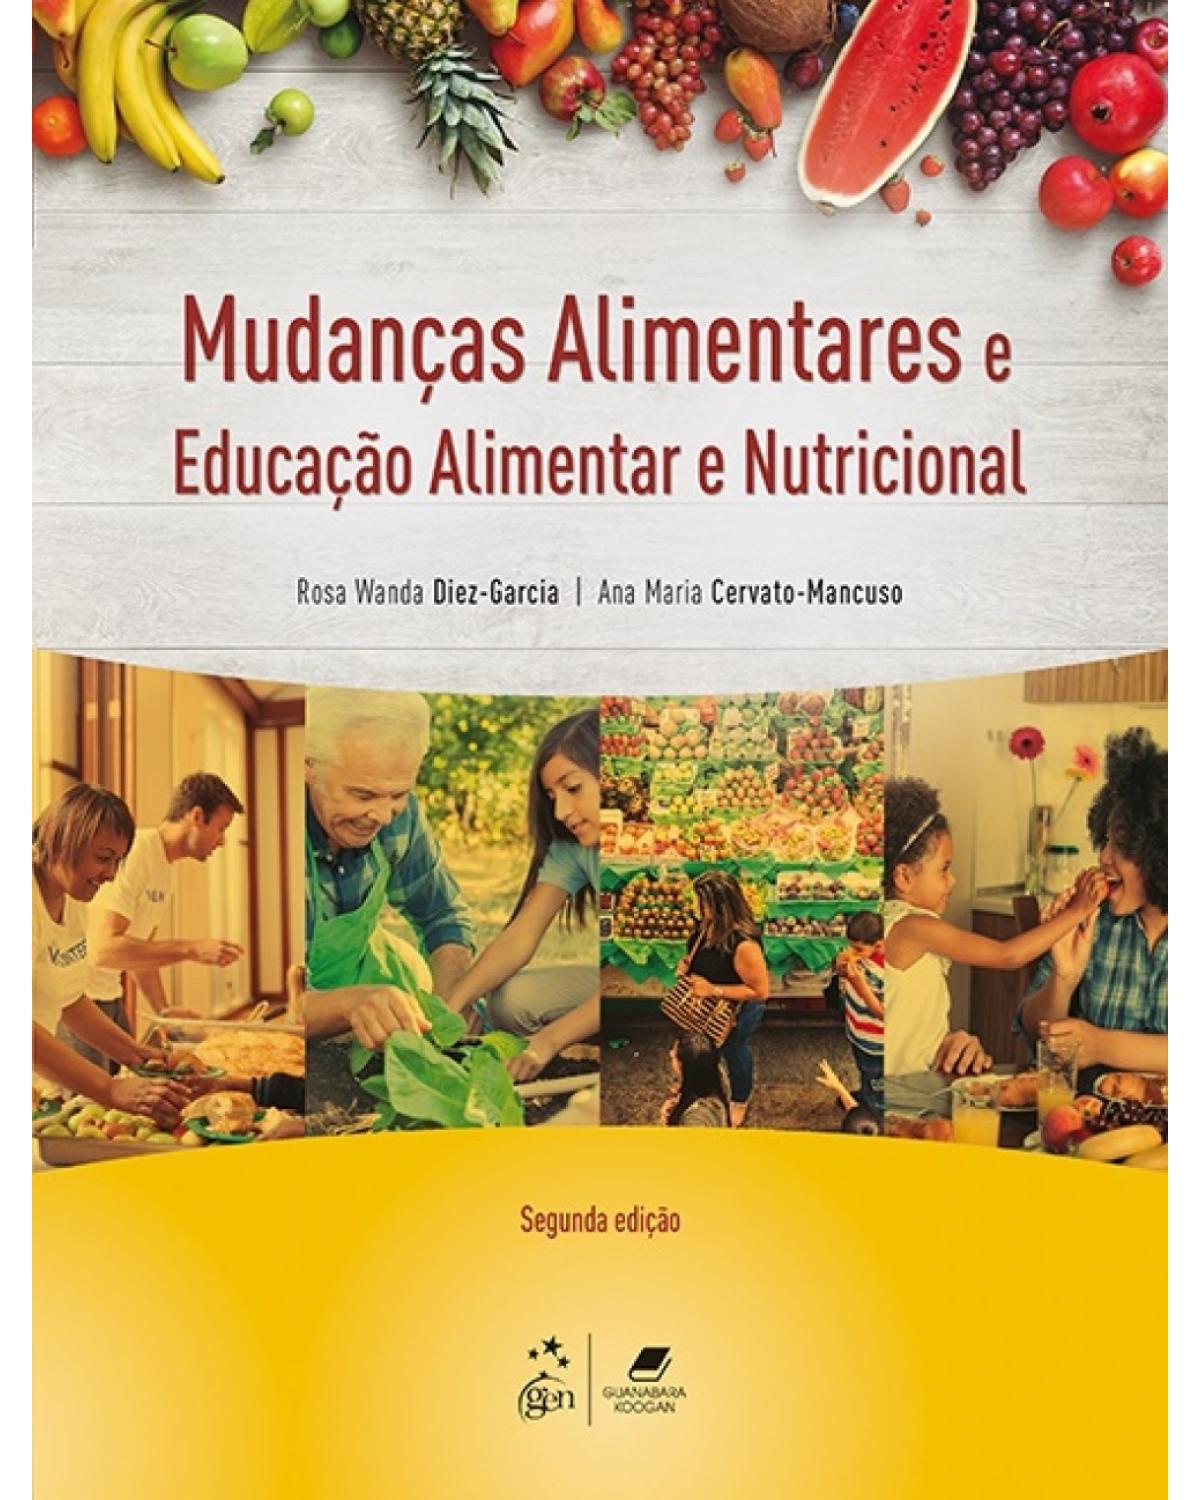 Mudanças alimentares e educação alimentar e nutricional - 2ª Edição | 2017